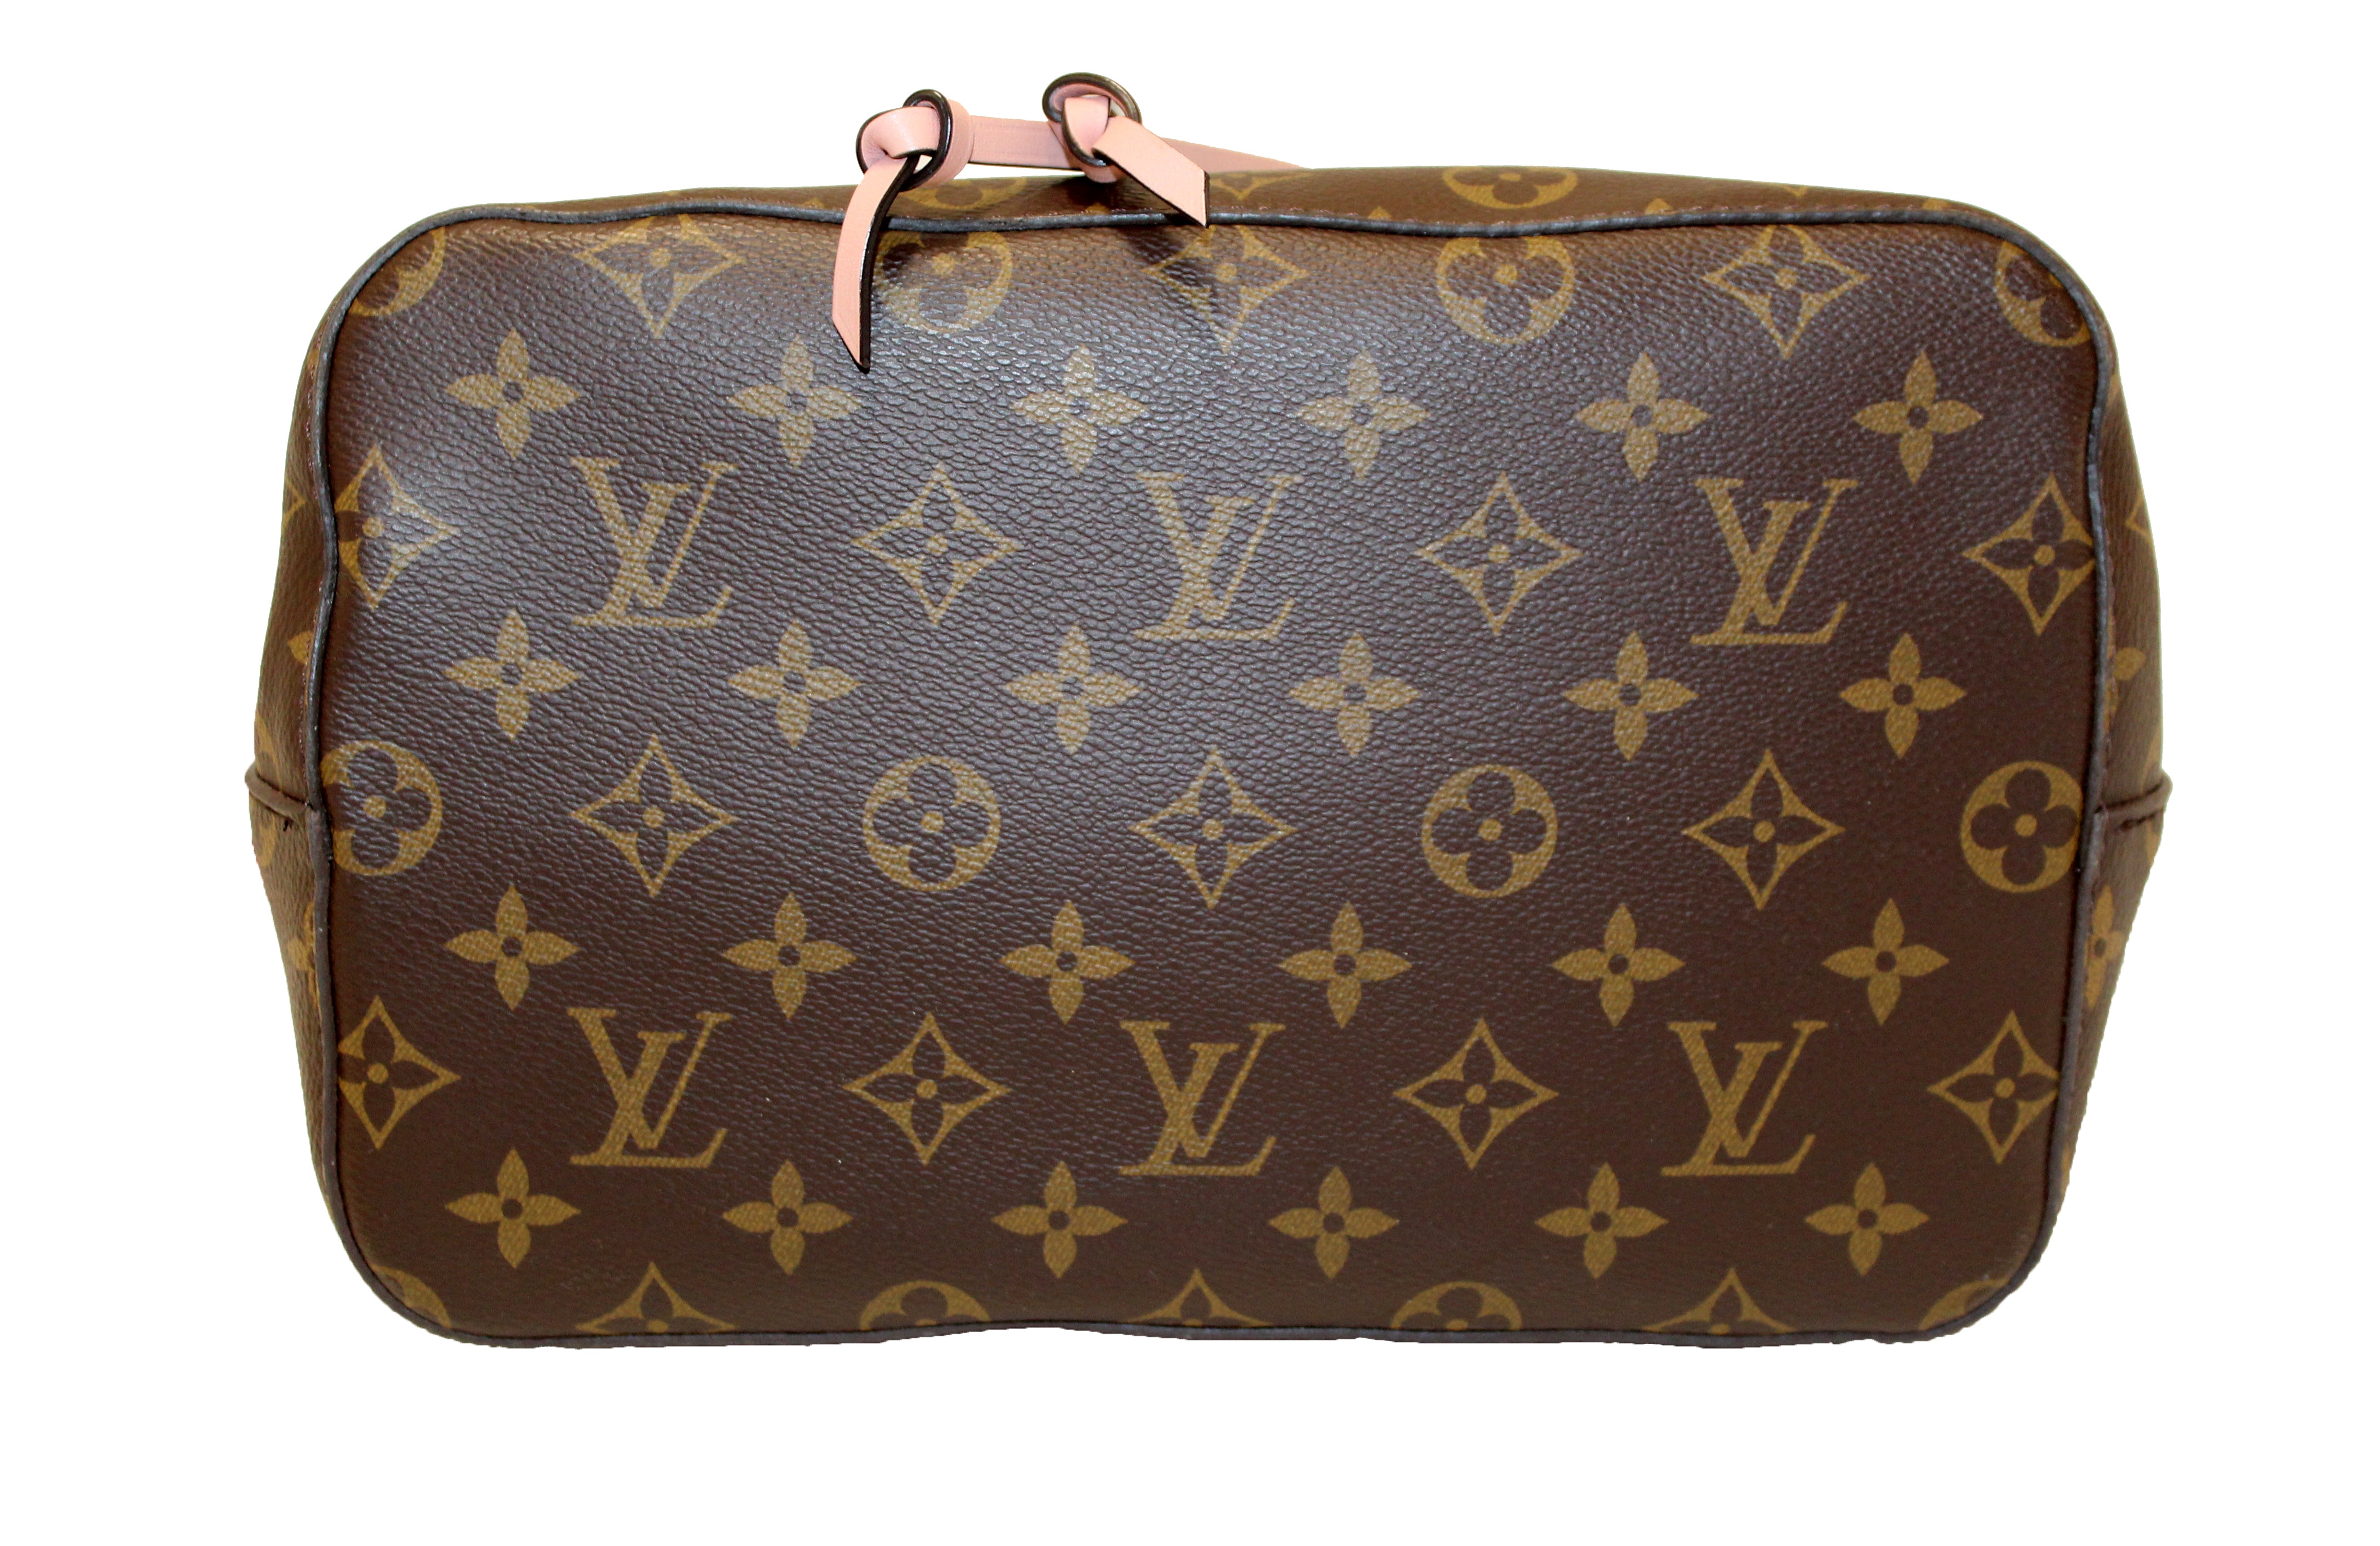 Authentic Louis Vuitton Classic Monogram Pink NeoNoe Shoulder Bag